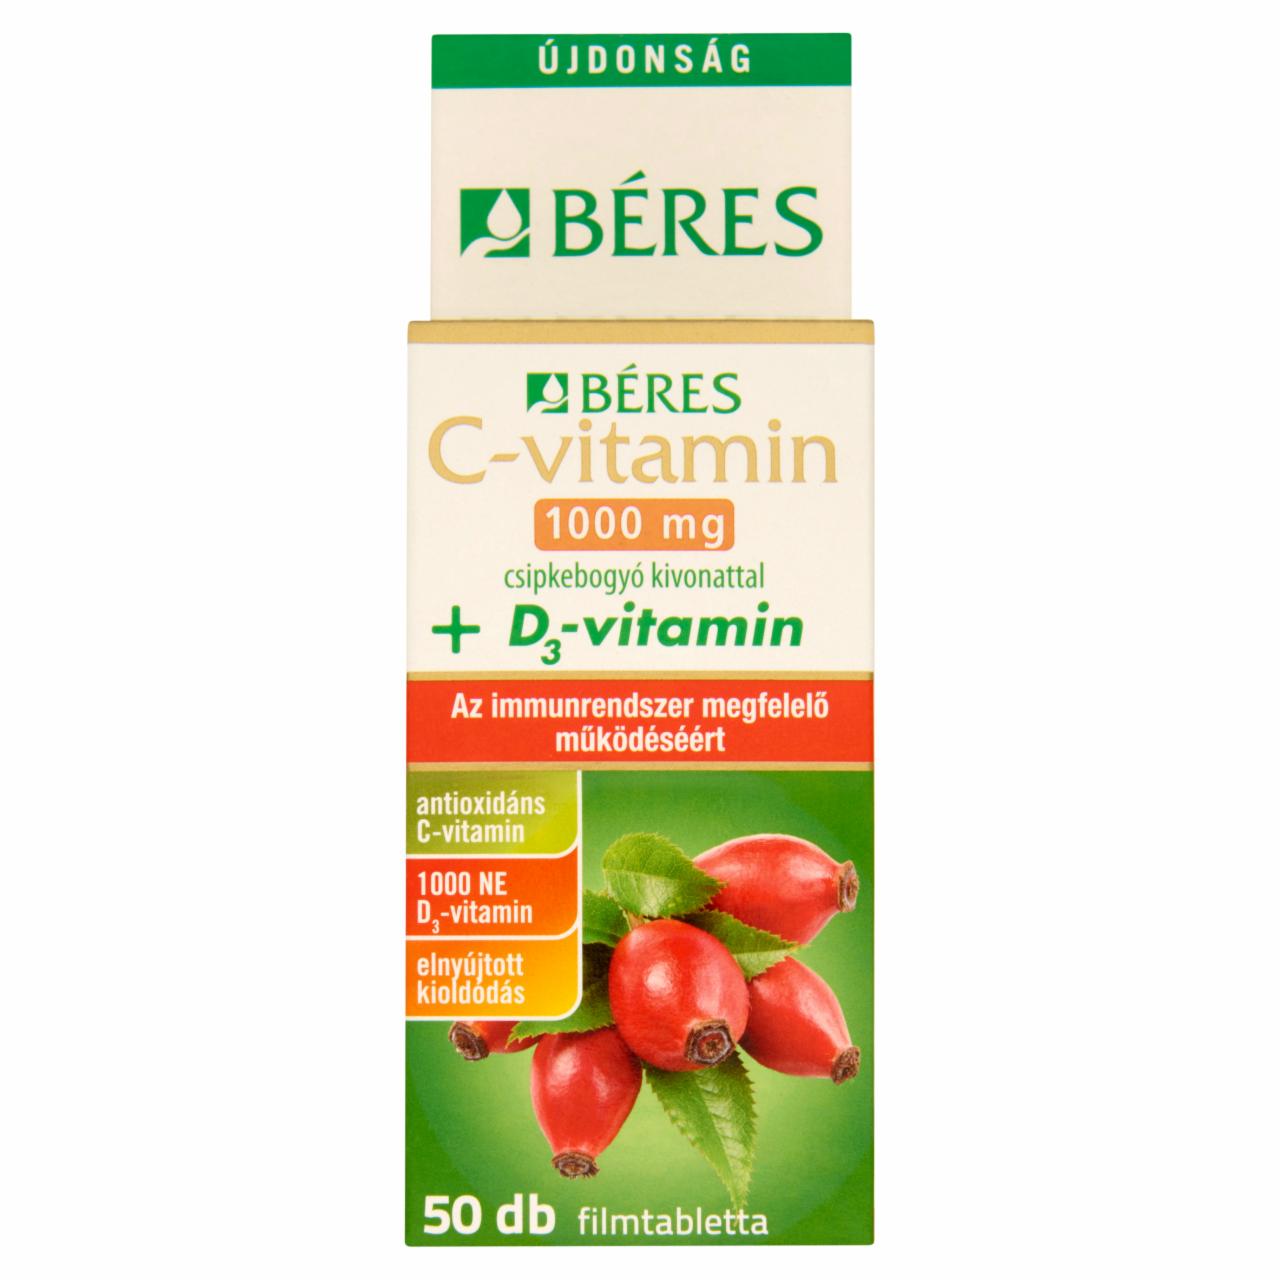 Képek - Béres C-vitamin 1000 mg + 1000 NE D3-vitamin filmtabletta csipkebogyókivonattal 50 x 1,85 g (92,5 g)